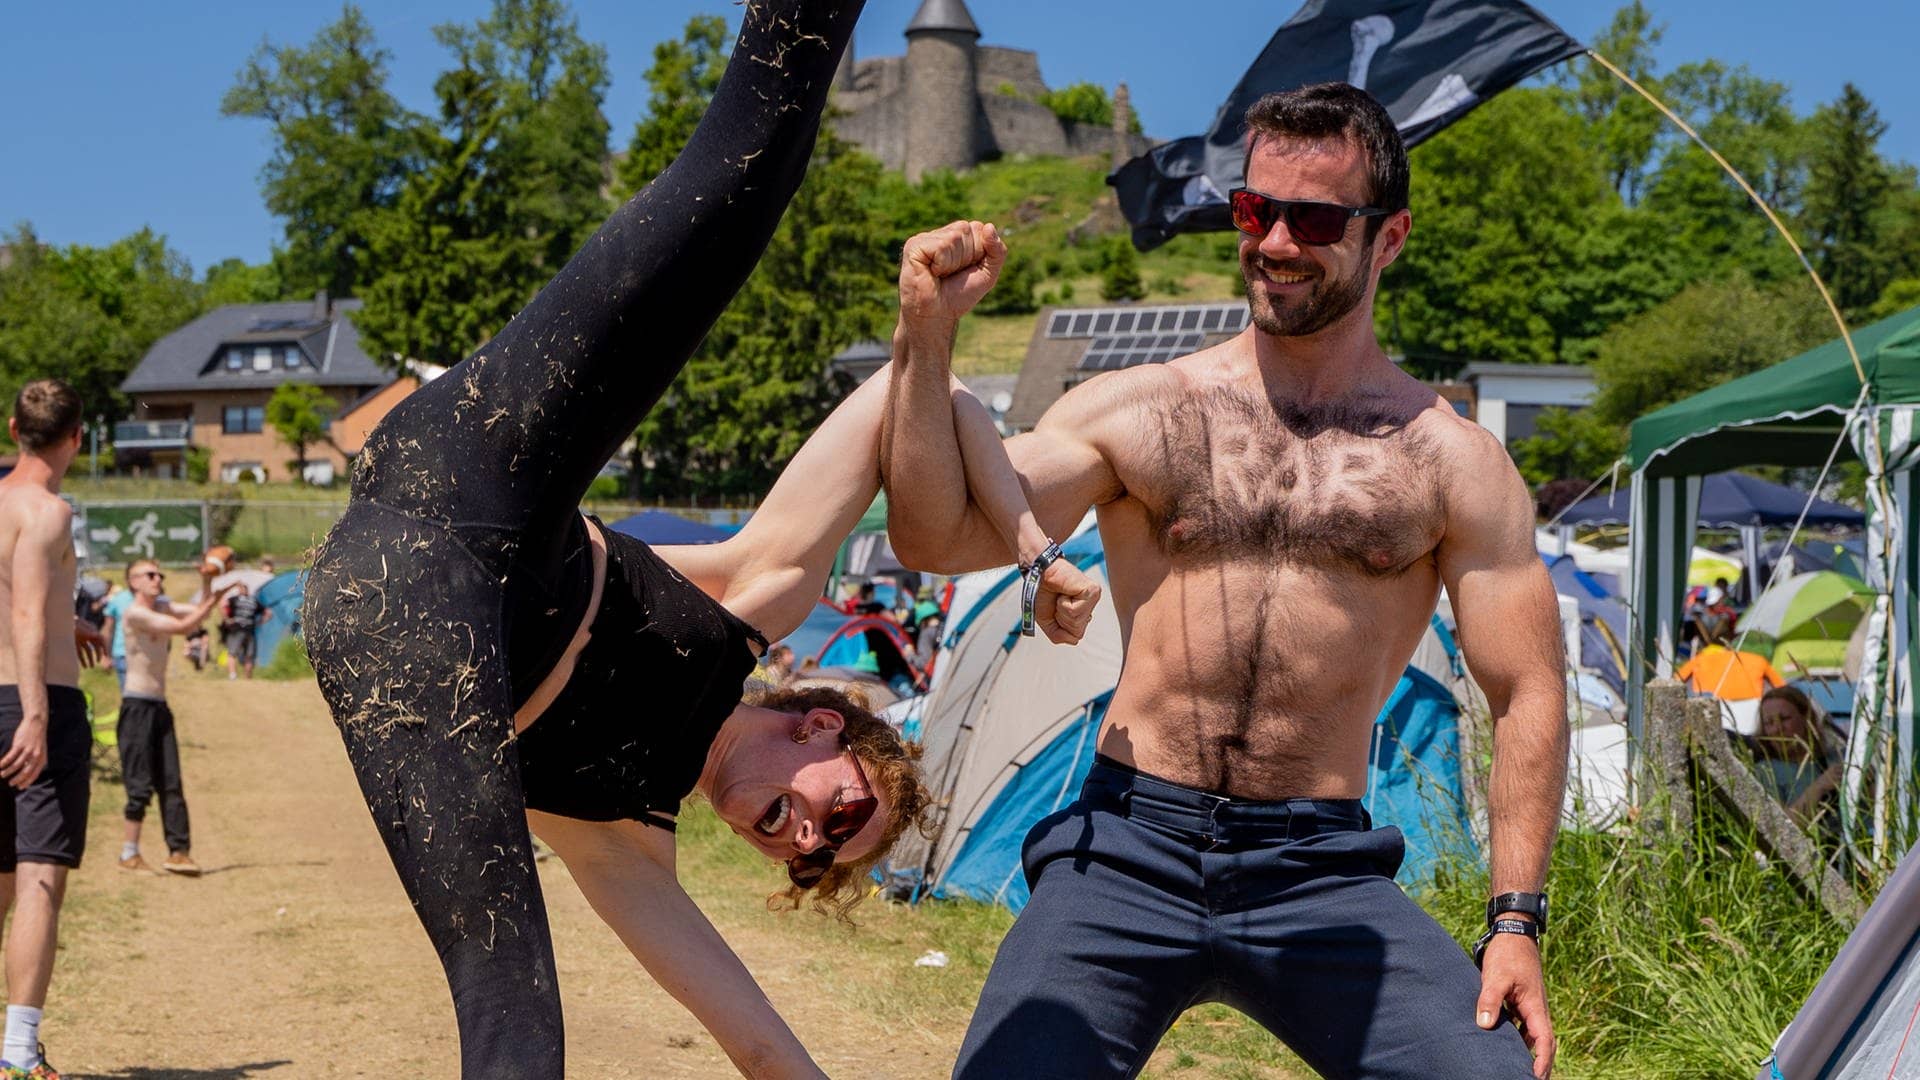 Zwei Campingplatz-Bewohner bei Rock am Ring machen eine Pose aus dem Bereich Acro-Yoga